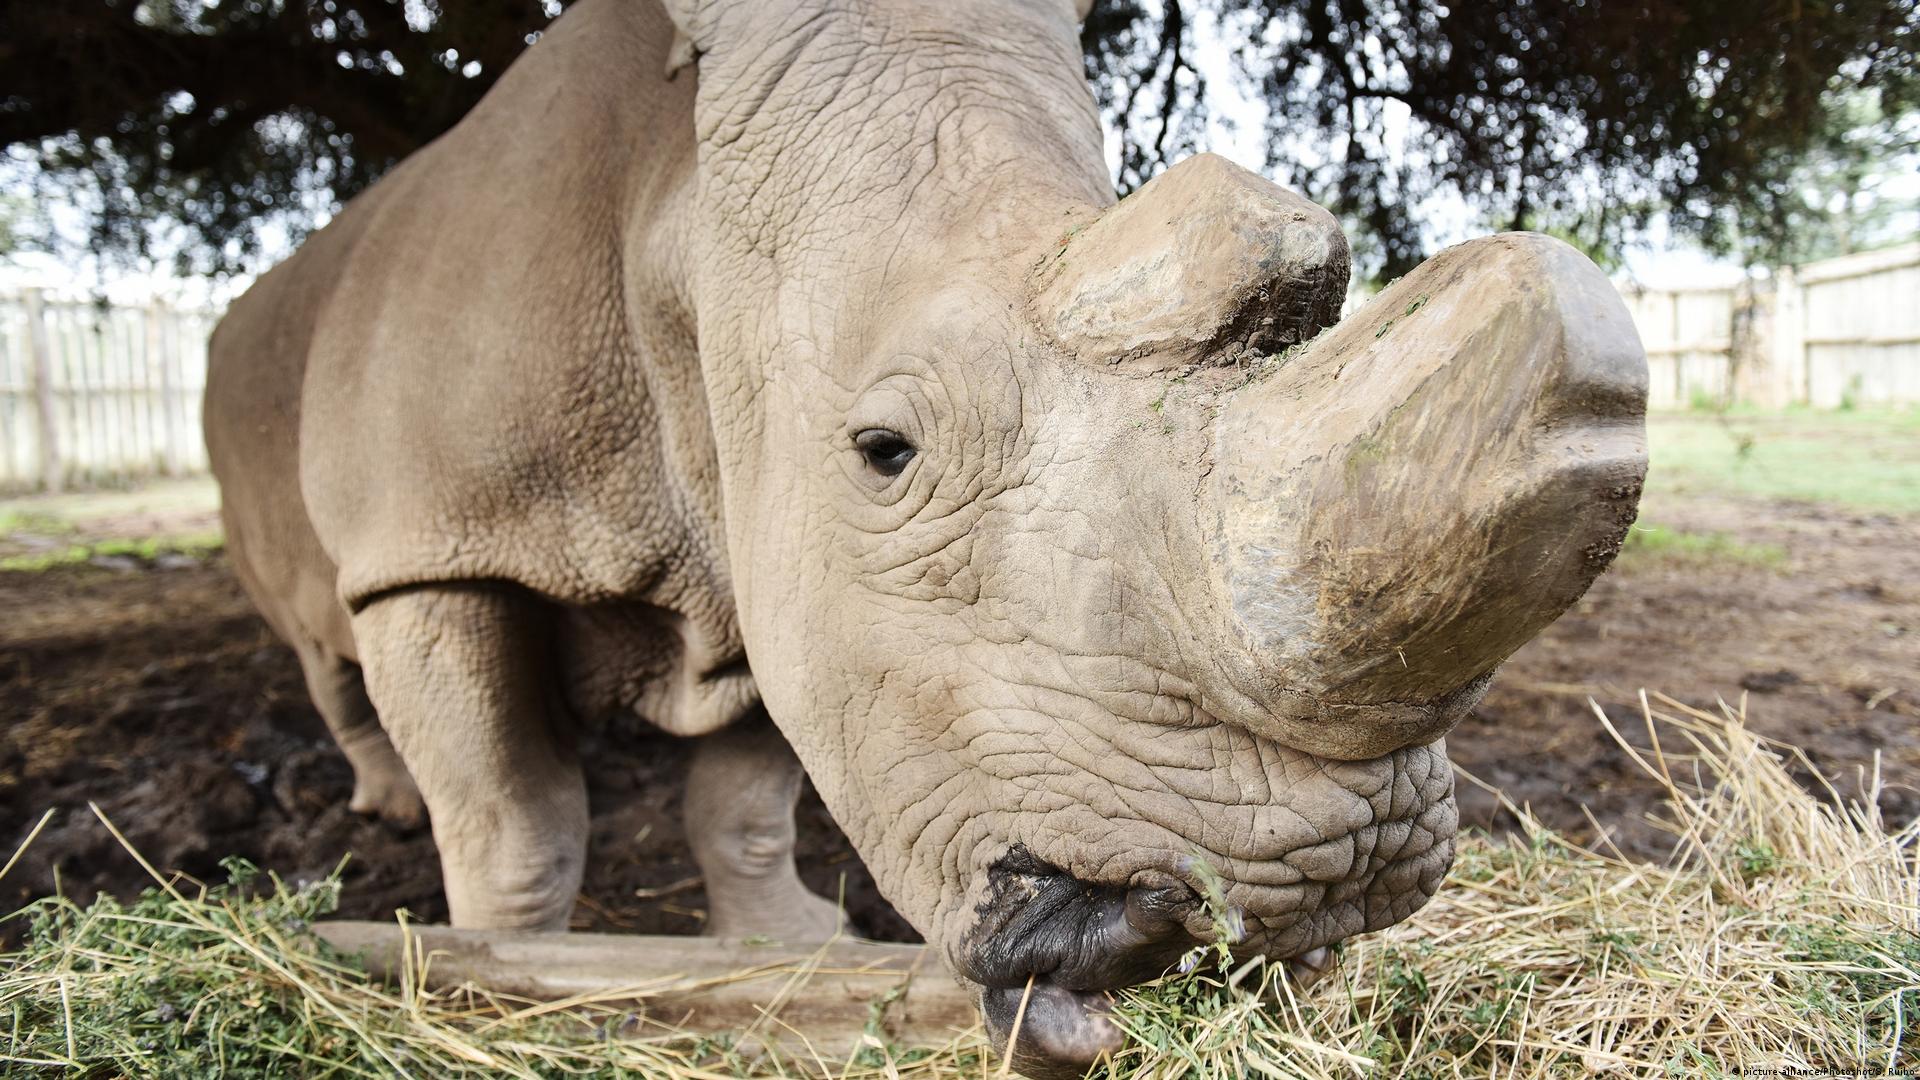 Researchers create hybrid rhino embryos – DW – 07/04/2018